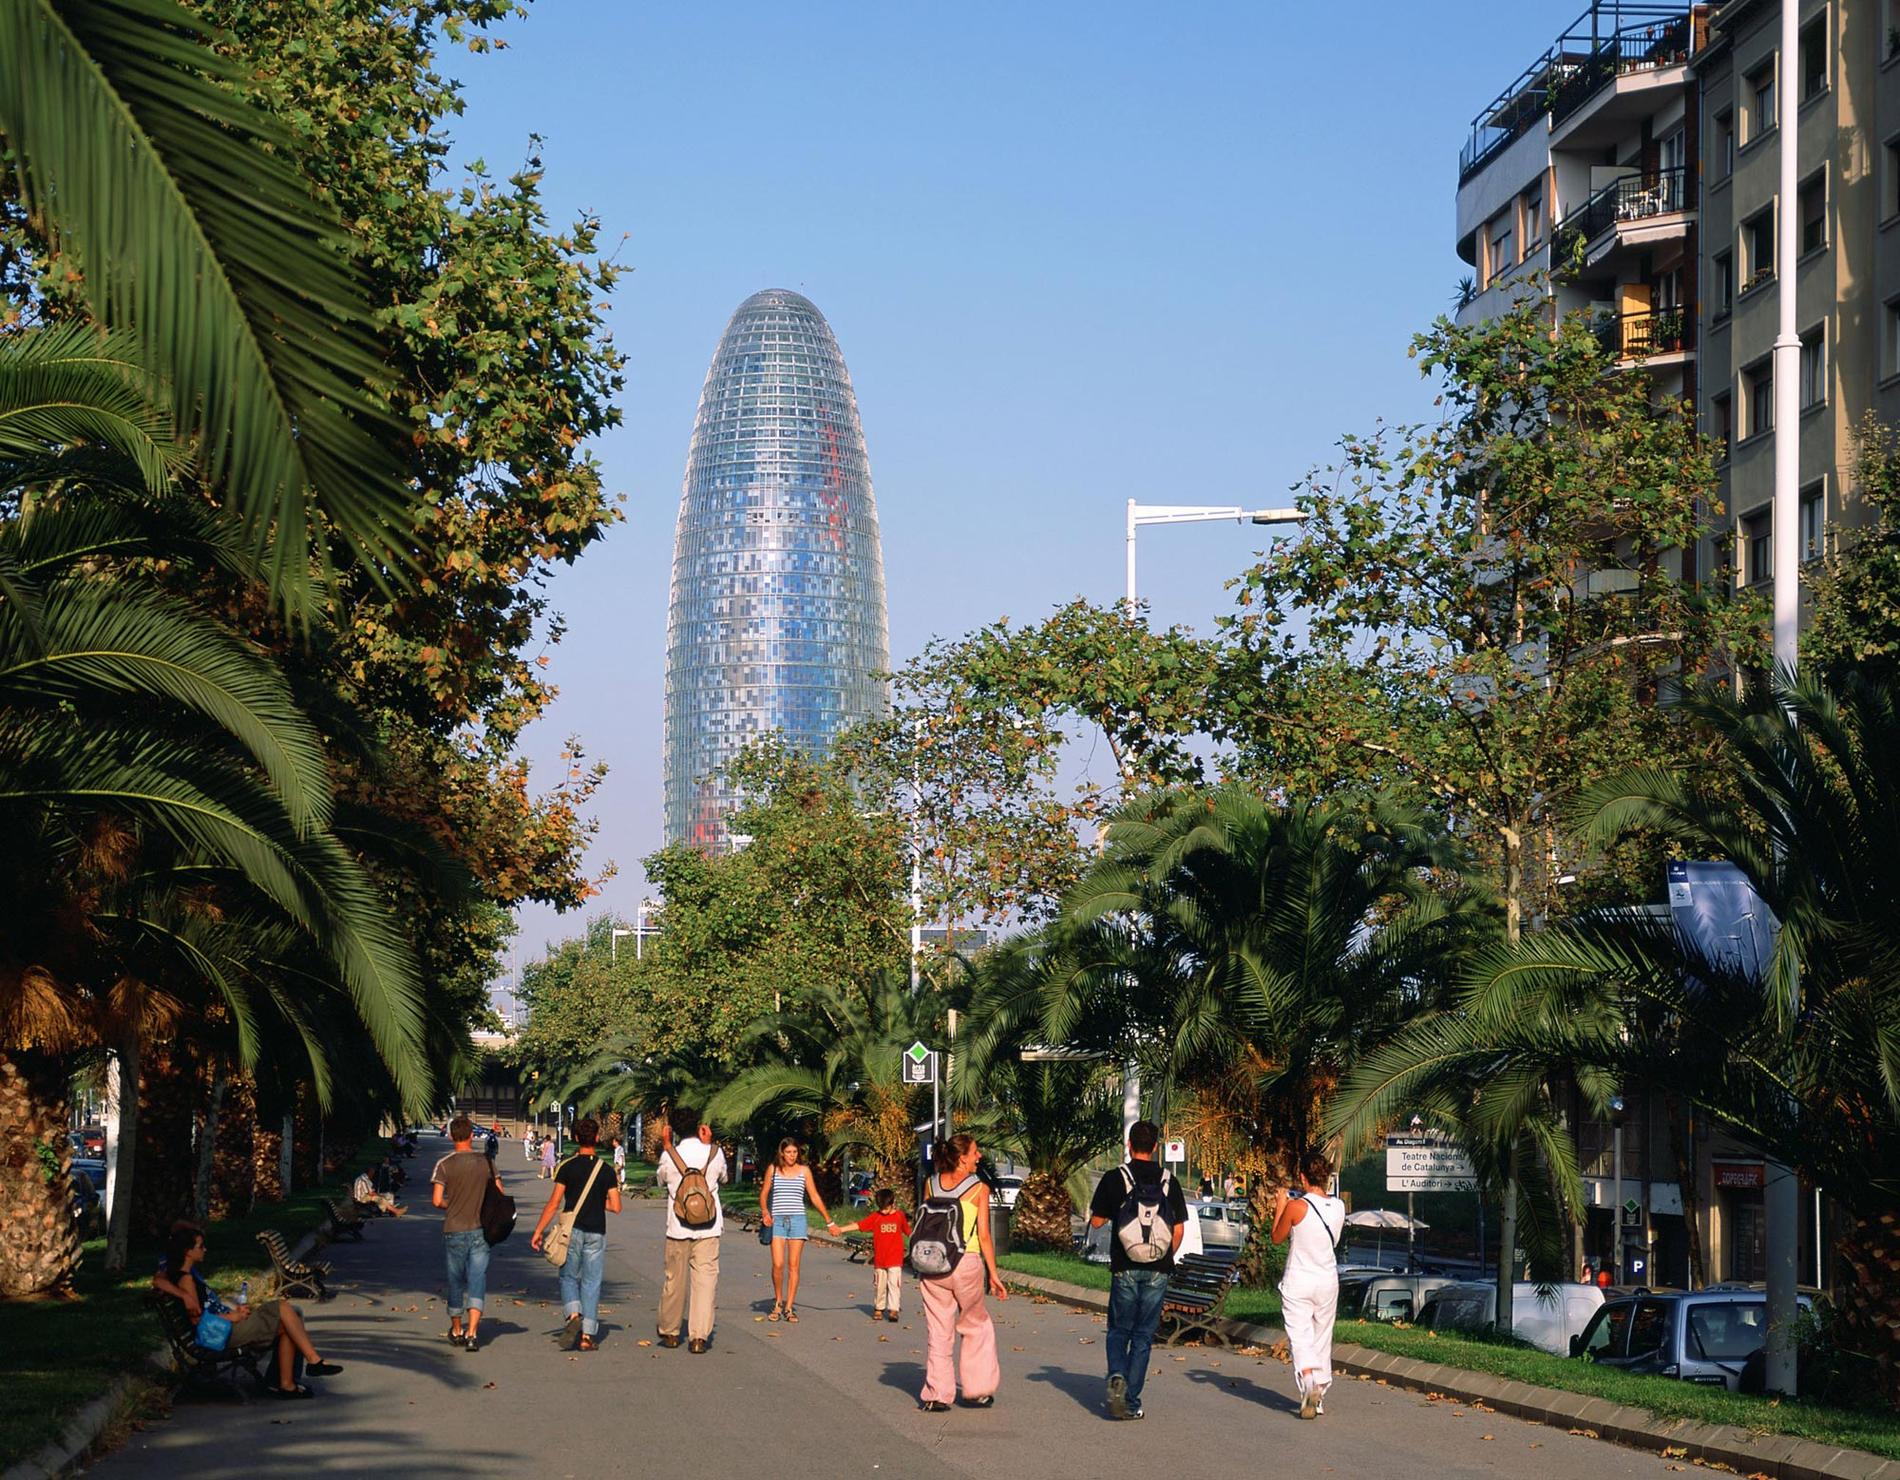 17. TORRE AGBAR, BARCELONA Som en pistolkula skjuter Torre Agbar upp ur marken i centrala Barcelona och når över 140 meter. Fasaden är klädd i aluminium och glas i 40 olika färger. 4500 lampor i gult, blått, rött, och rosa lyser upp byggnaden kvällstid. Höjd: 142 meter. Klar: 2004. Byggkostnad: 910 miljoner kronor. Kolla in vad det kostar att resa till Barcelona med flyg + hotell.